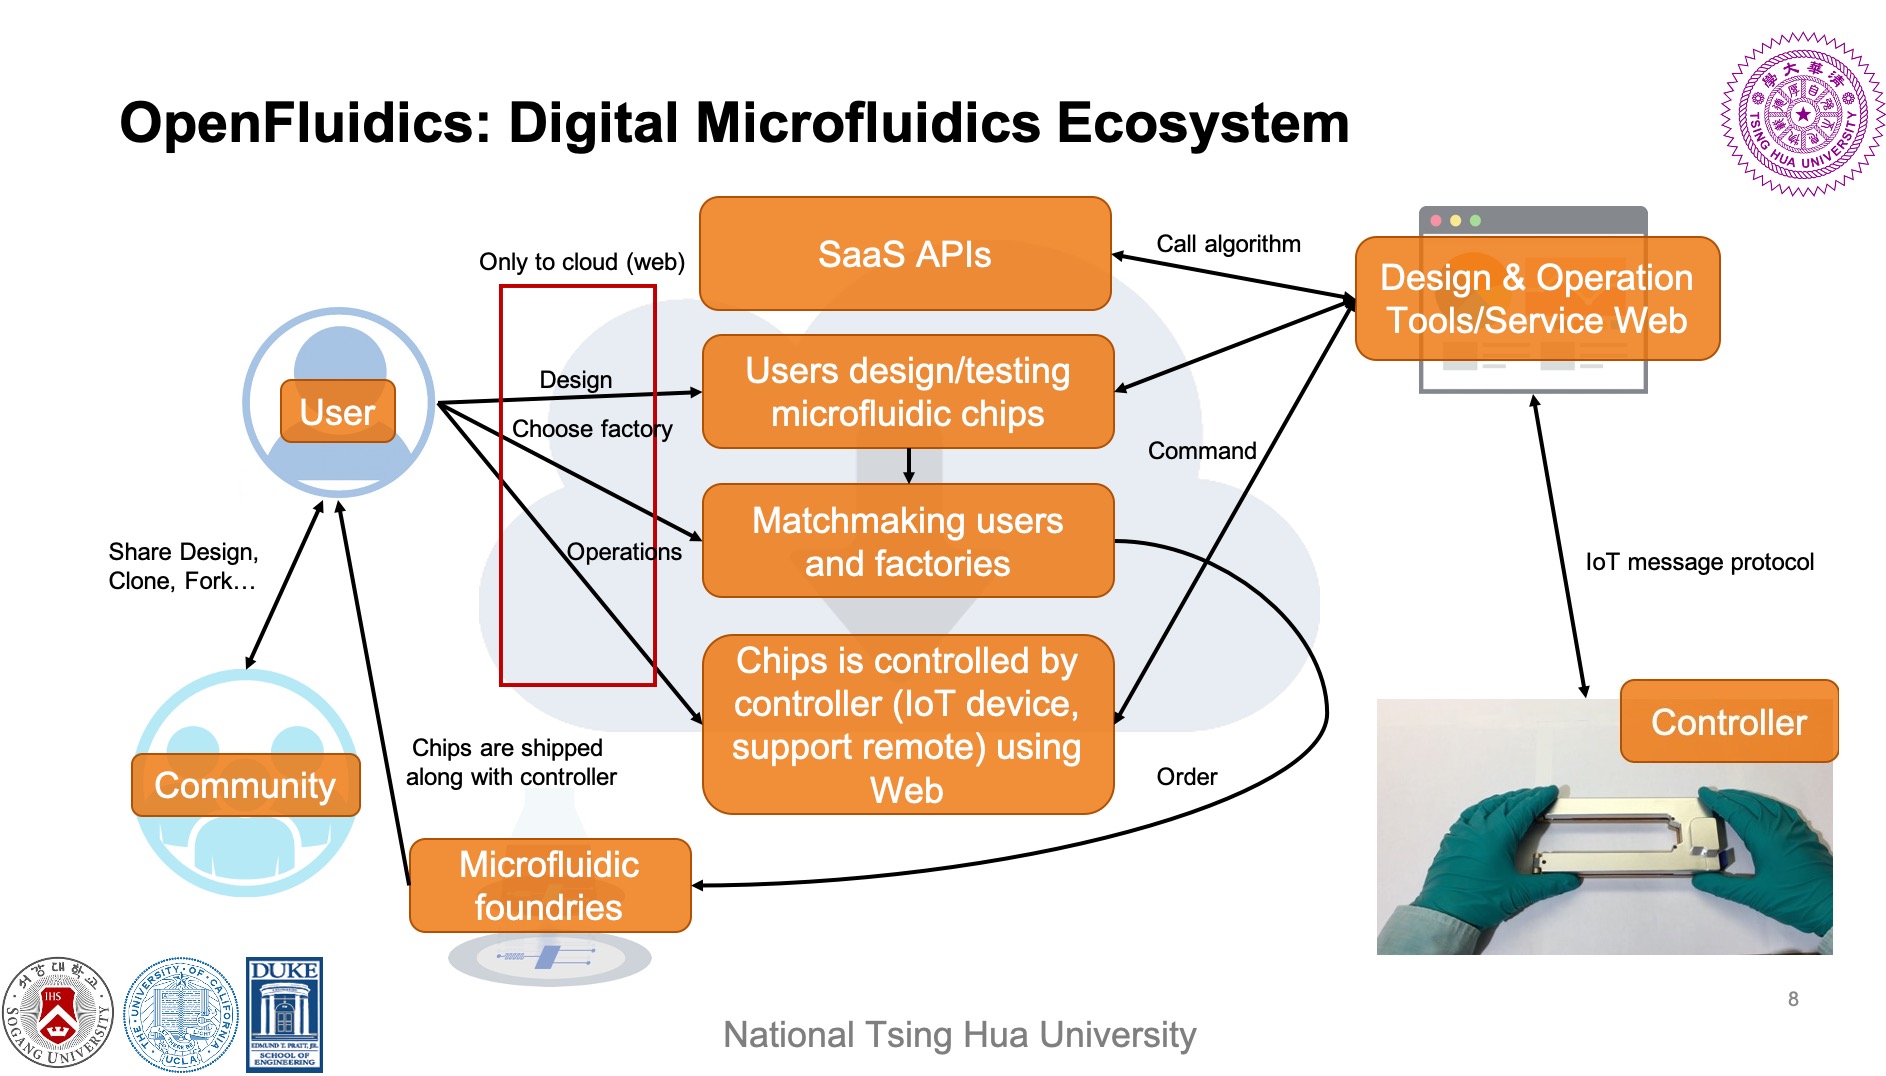 OpenFluidics: An Open-Source Microfluidic Design Ecosystem